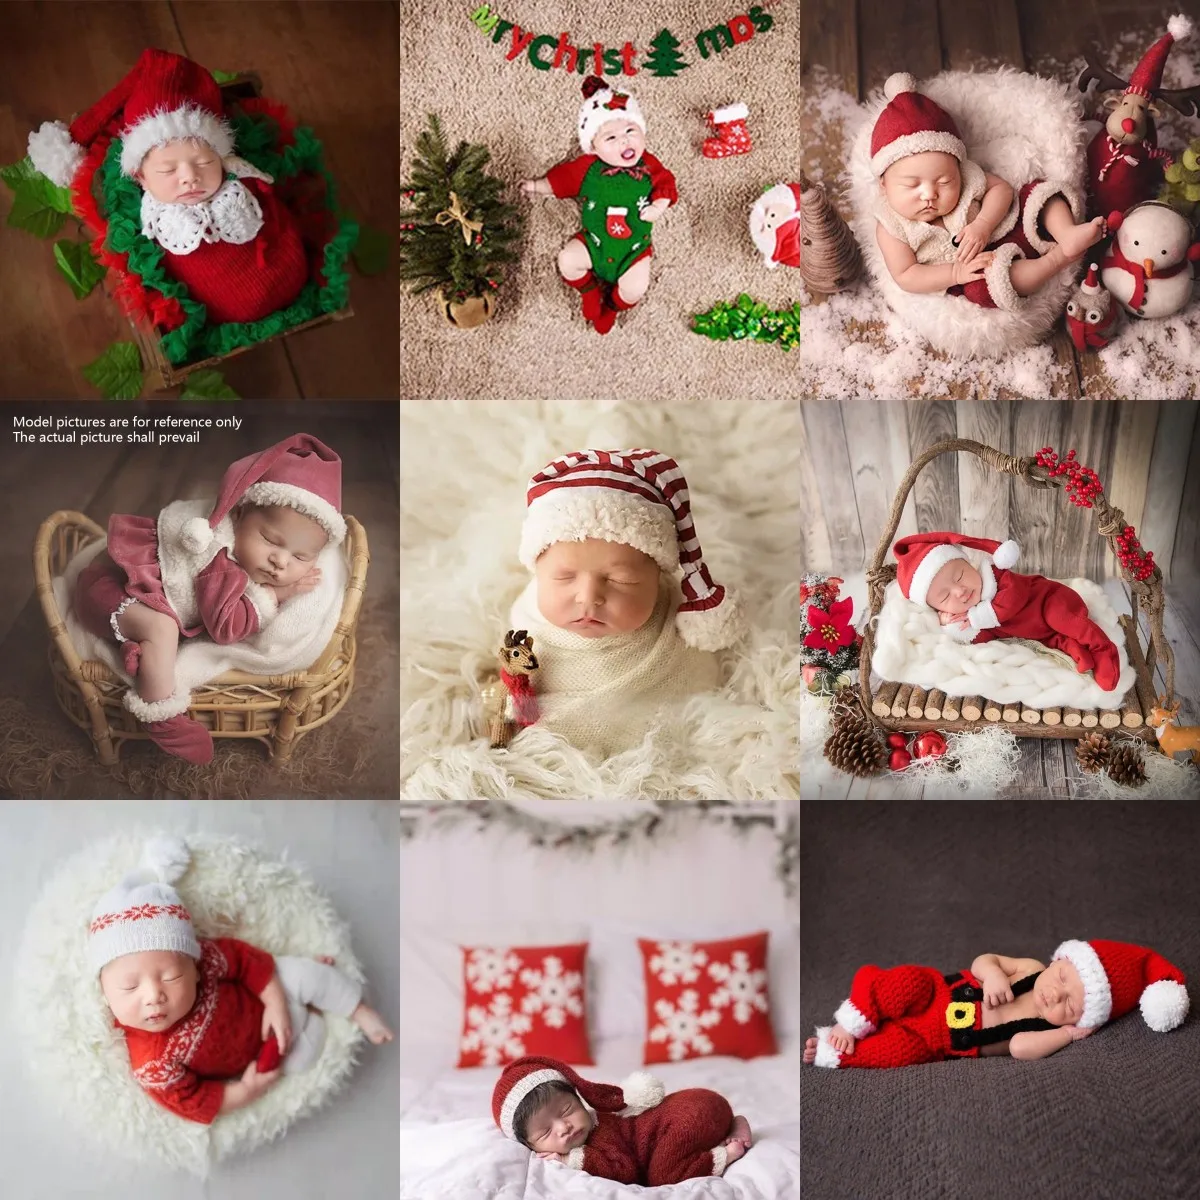 

2 Pcs Newborn Photography Props Crochet Outfit Baby Romper Hat Set Infants Photo Shooting Beanies Cap Jumpsuit Bodysuit Clothing